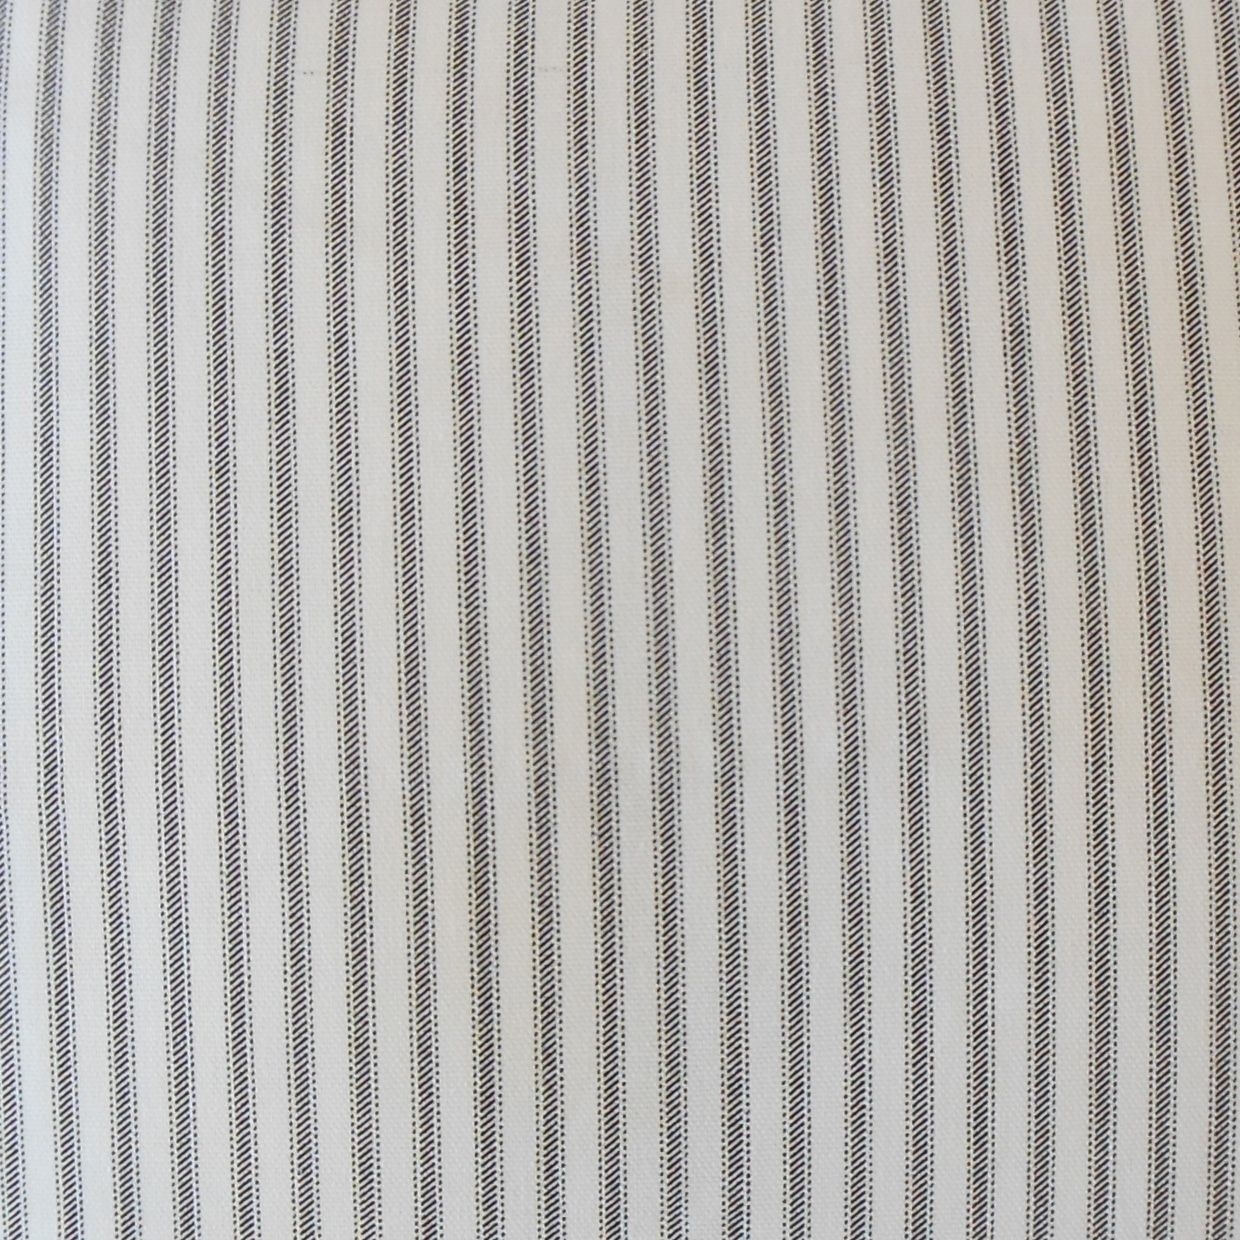 Ticking Stripe Pillow, Black, 20" x 20" - Image 1